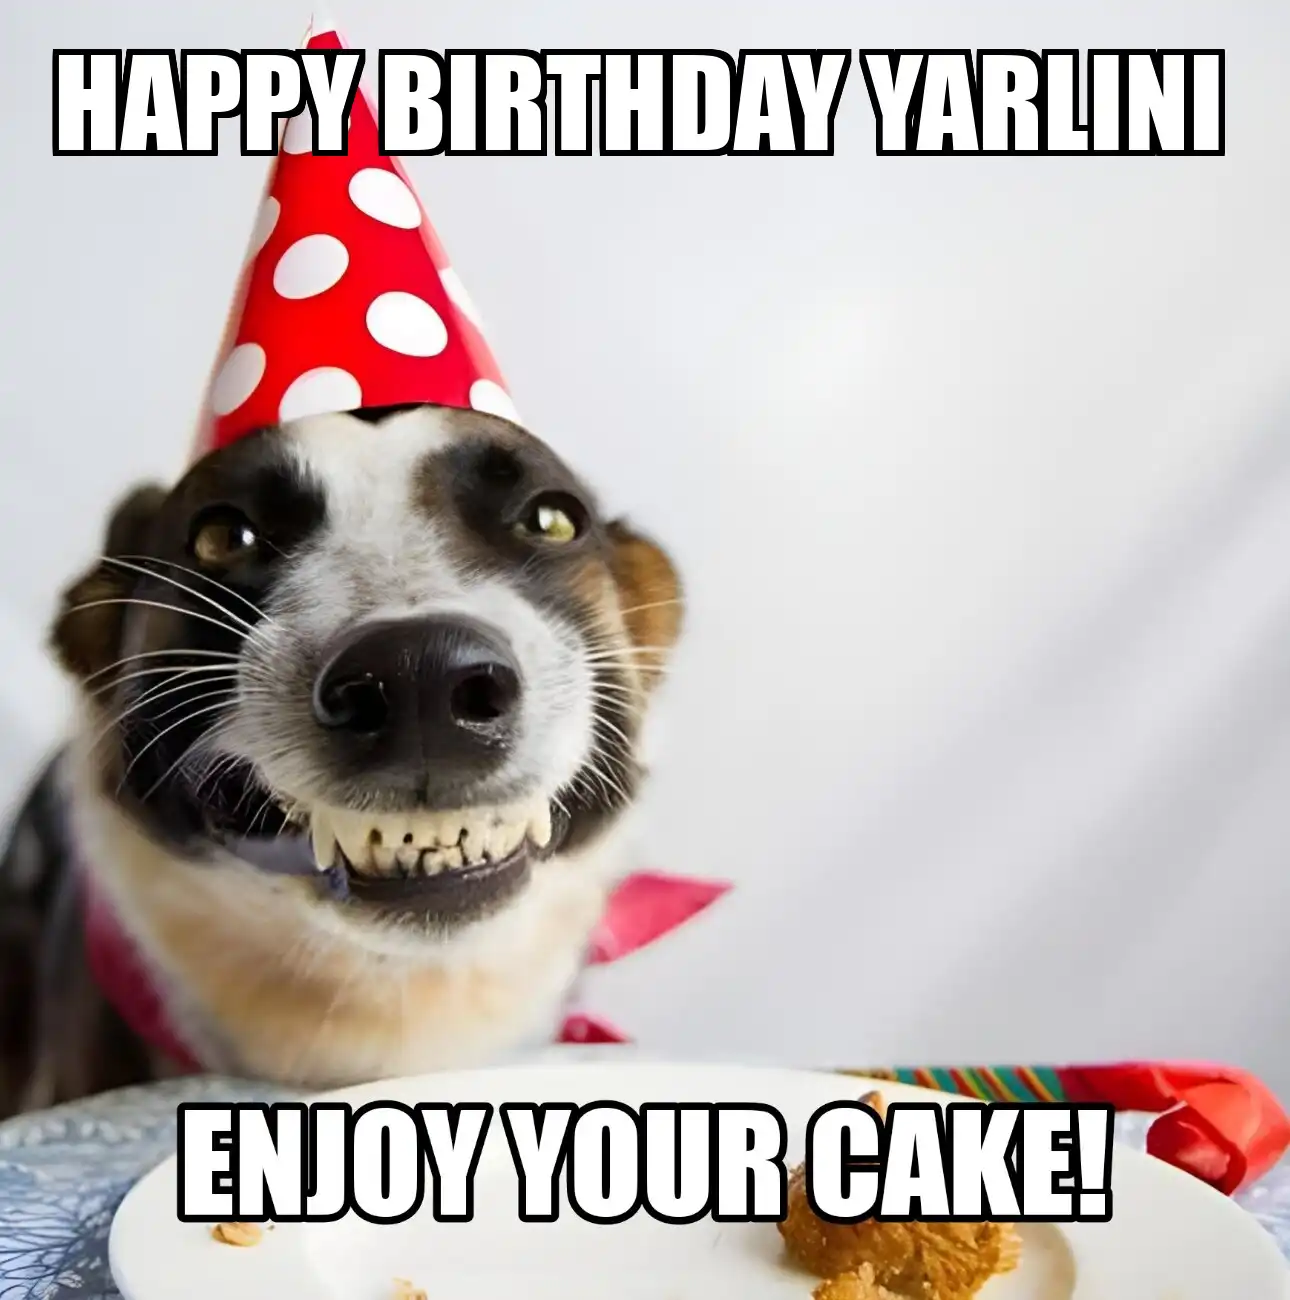 Happy Birthday Yarlini Enjoy Your Cake Dog Meme